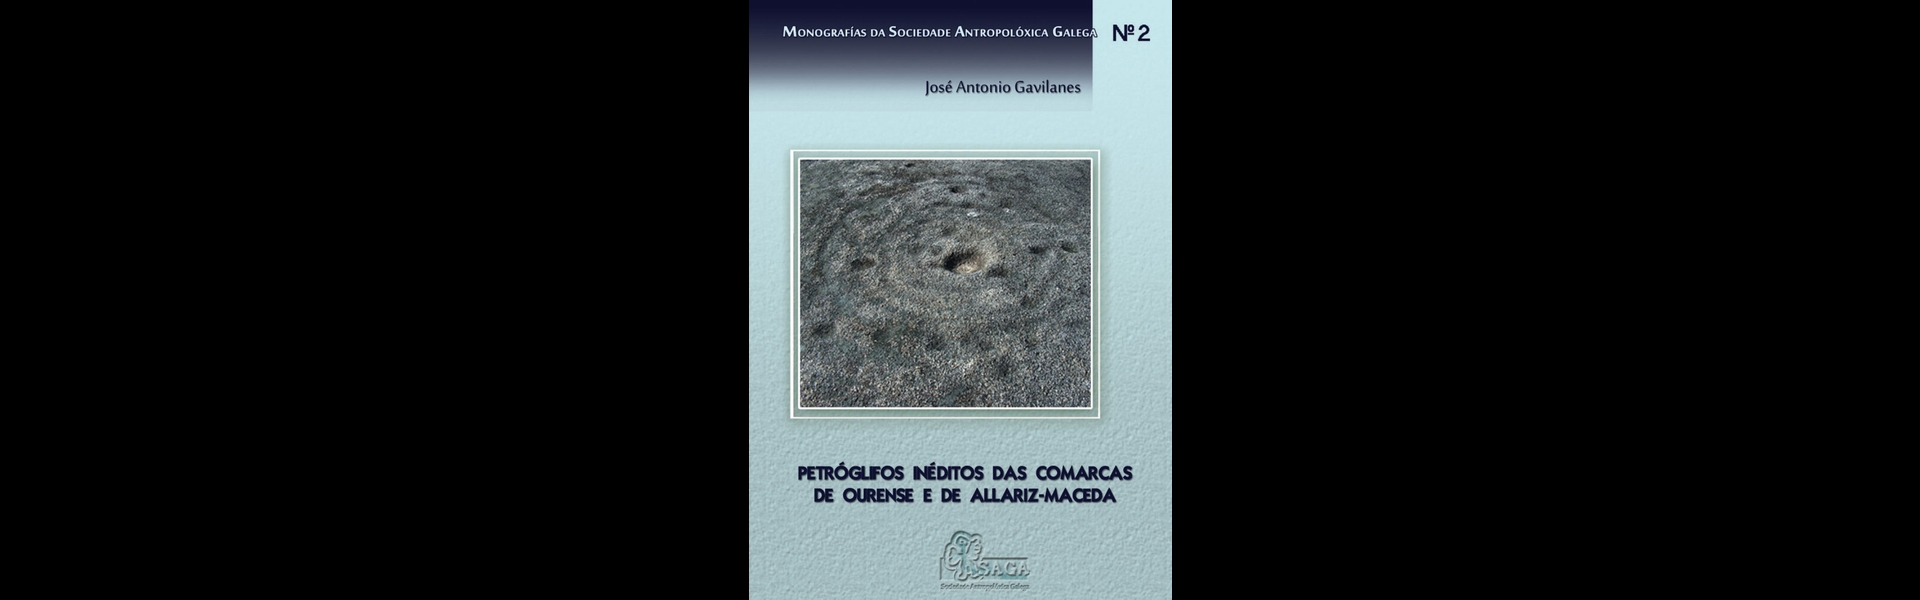 Petroglifos ineditos das comarcas de ourense e de allariz-maceda